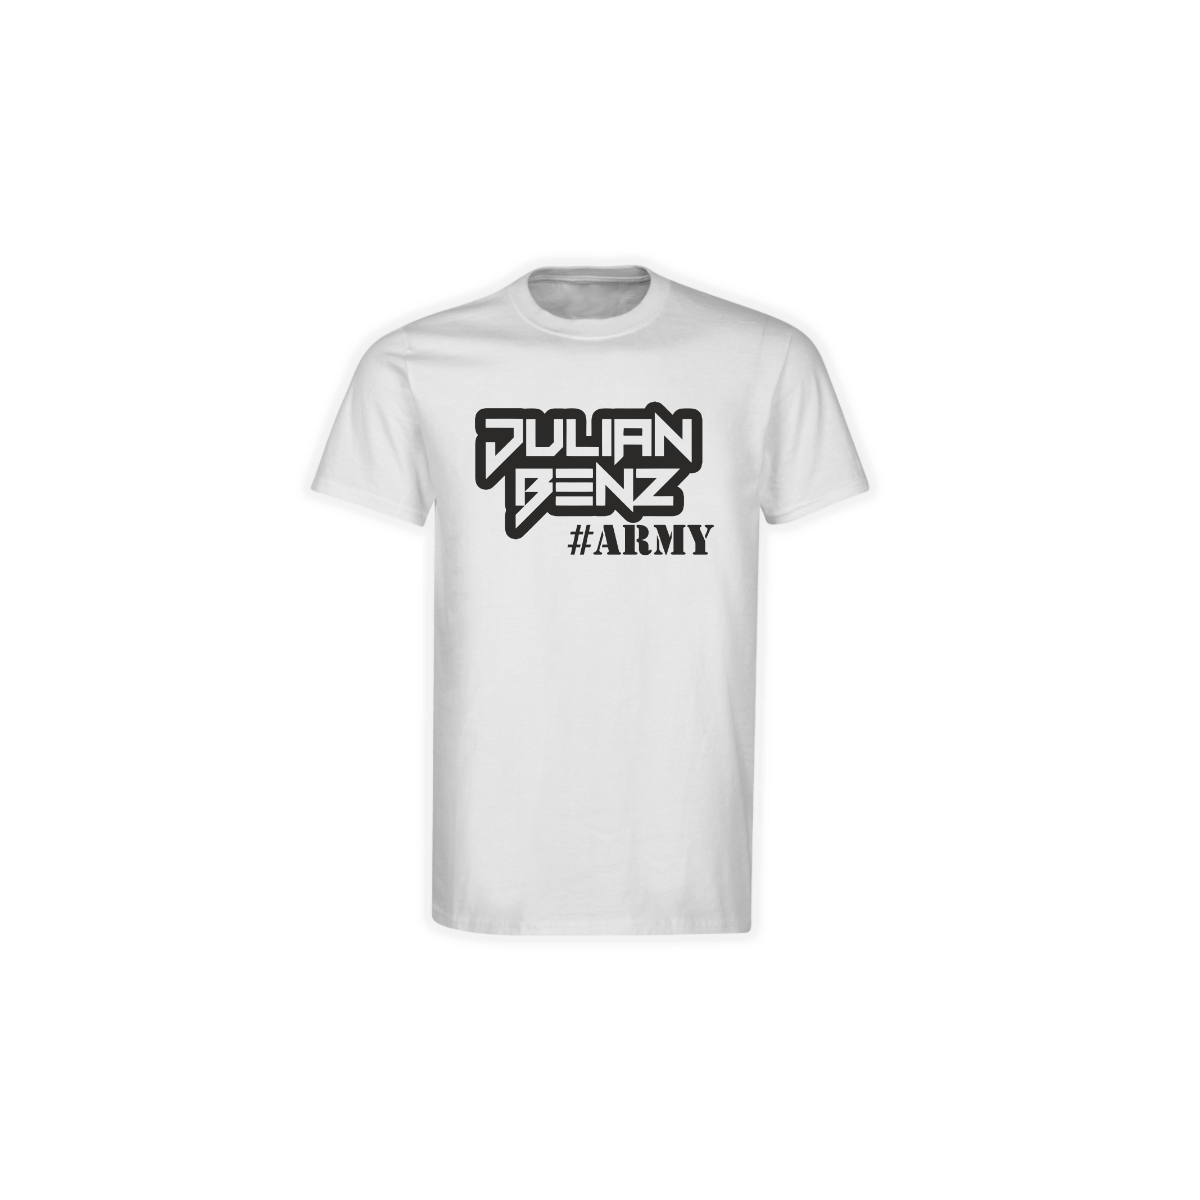 T-Shirt "JULIAN BENZ ARMY" weiß